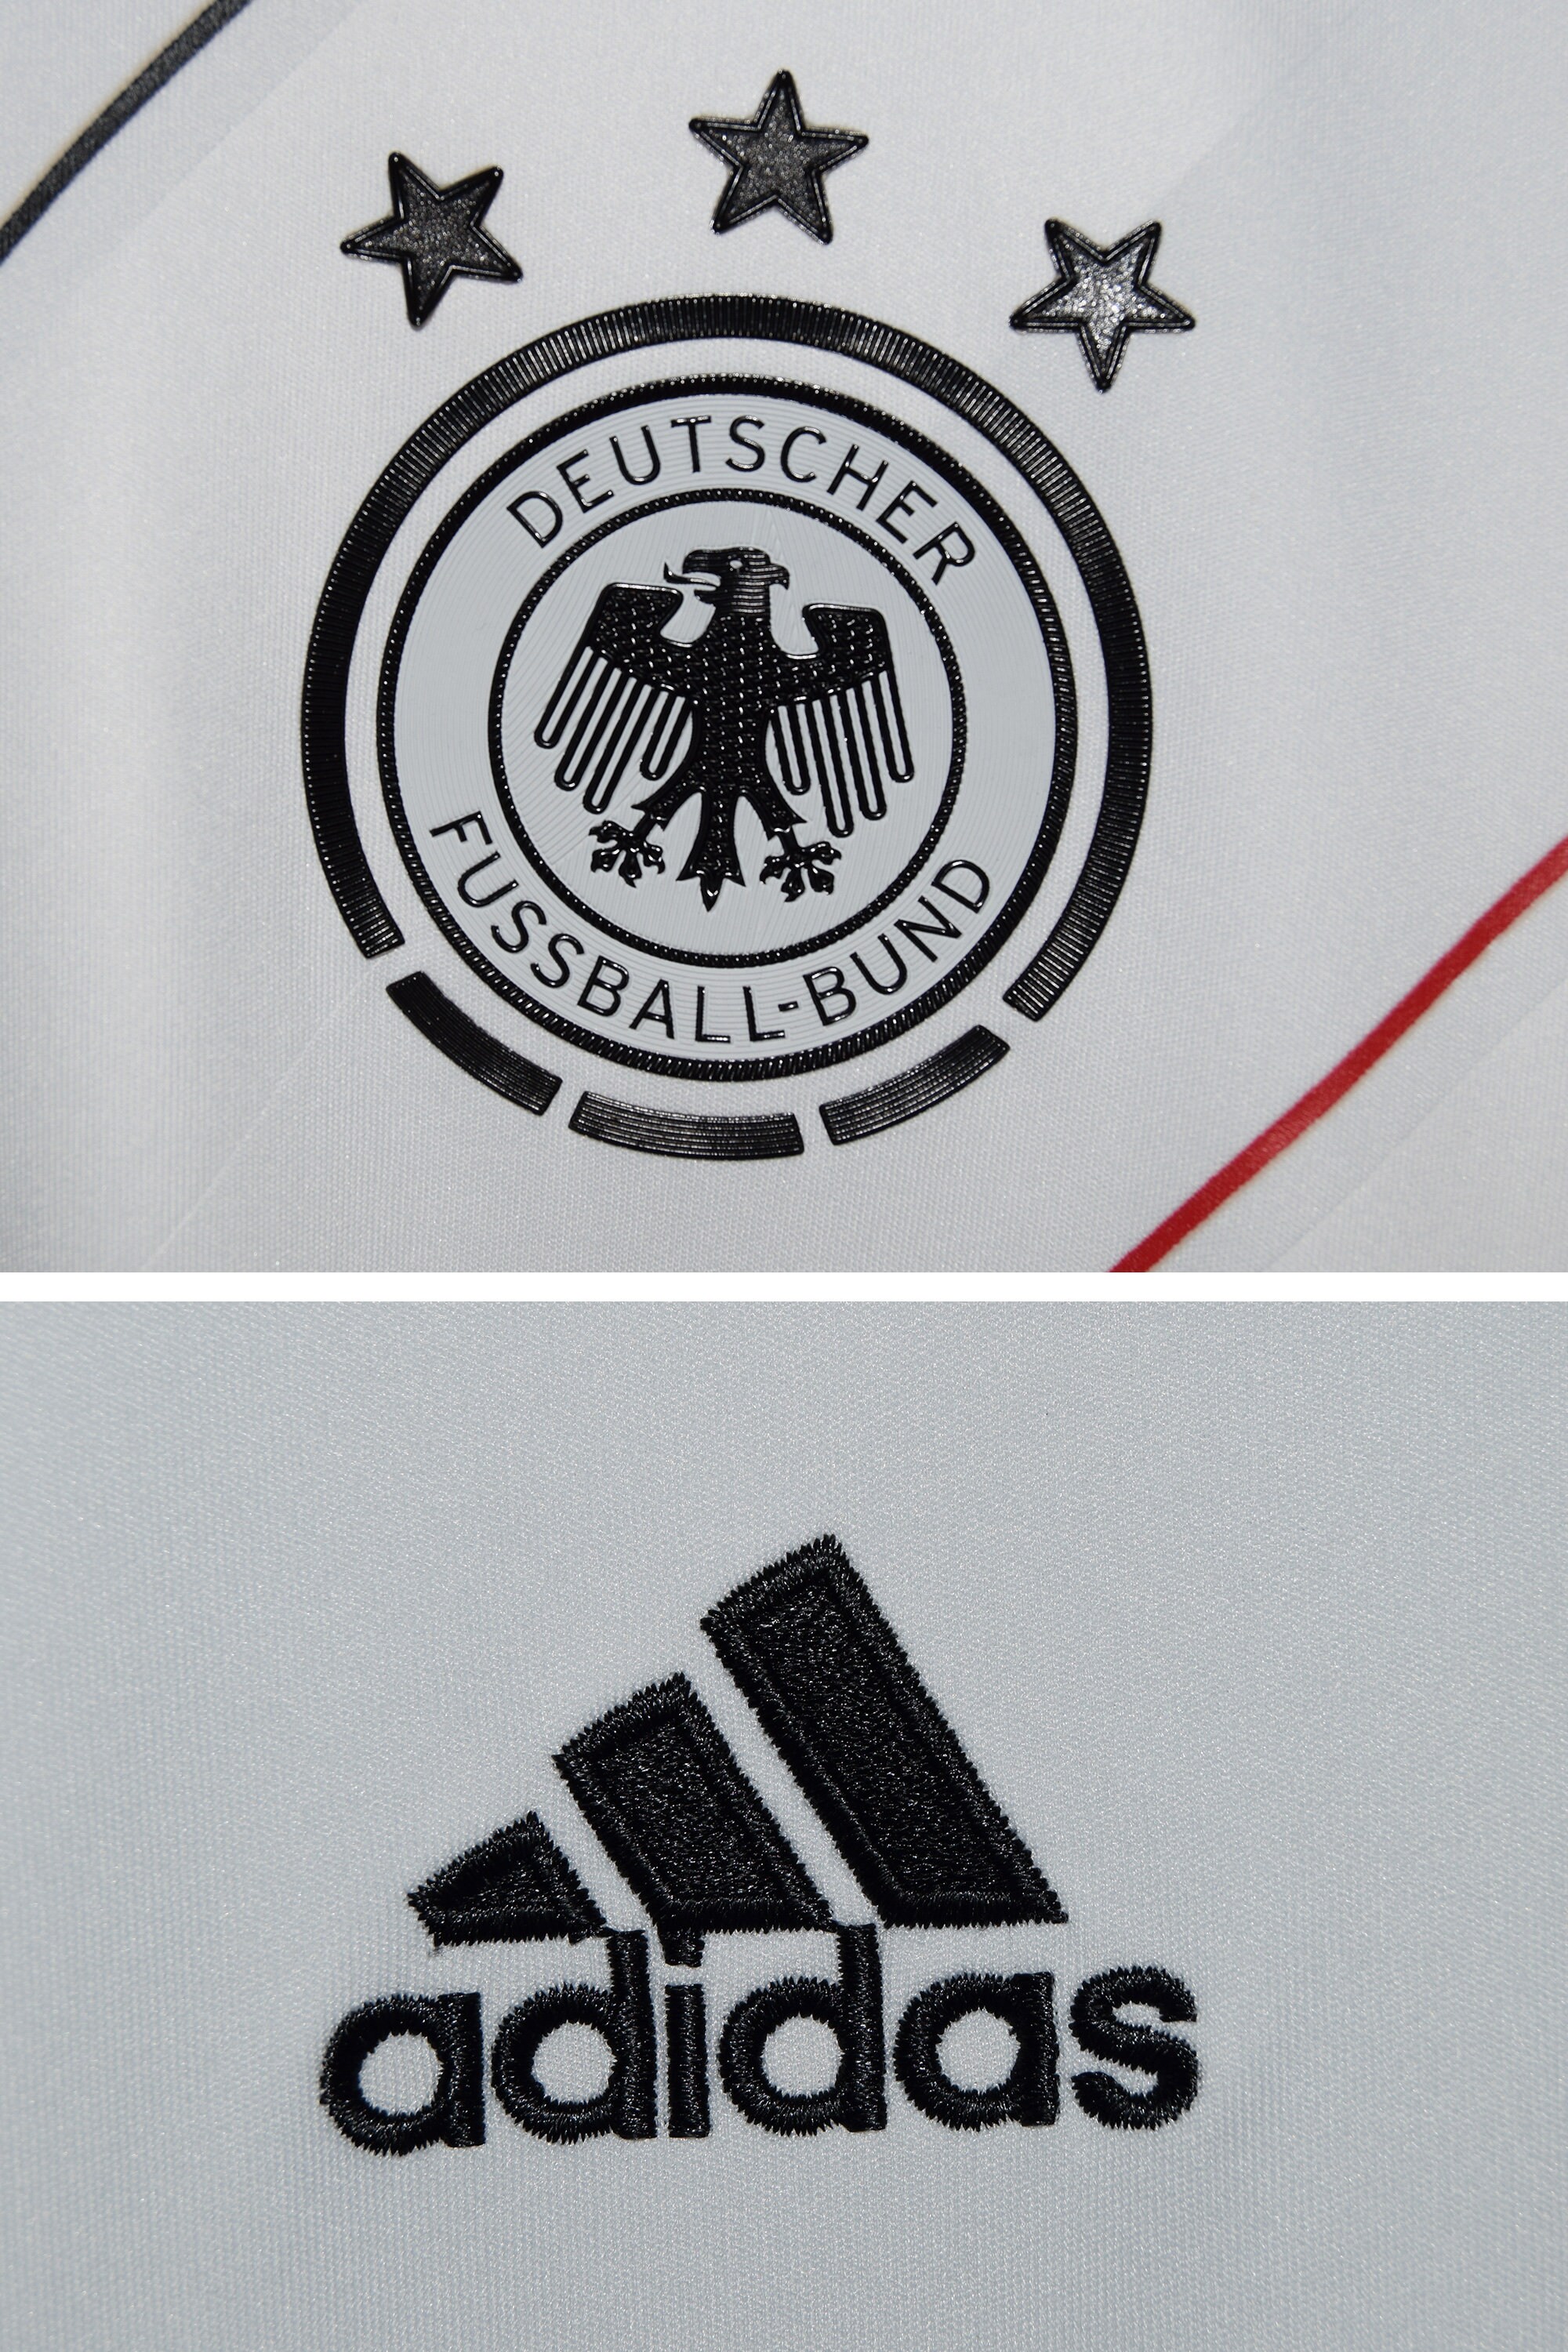 StreetGem Adidas x deutscher Fussball-Bund x Özil 8 Jersey / V-Neck Football T-Shirt / Sportswear / Size Youth XL - Fits Men's S